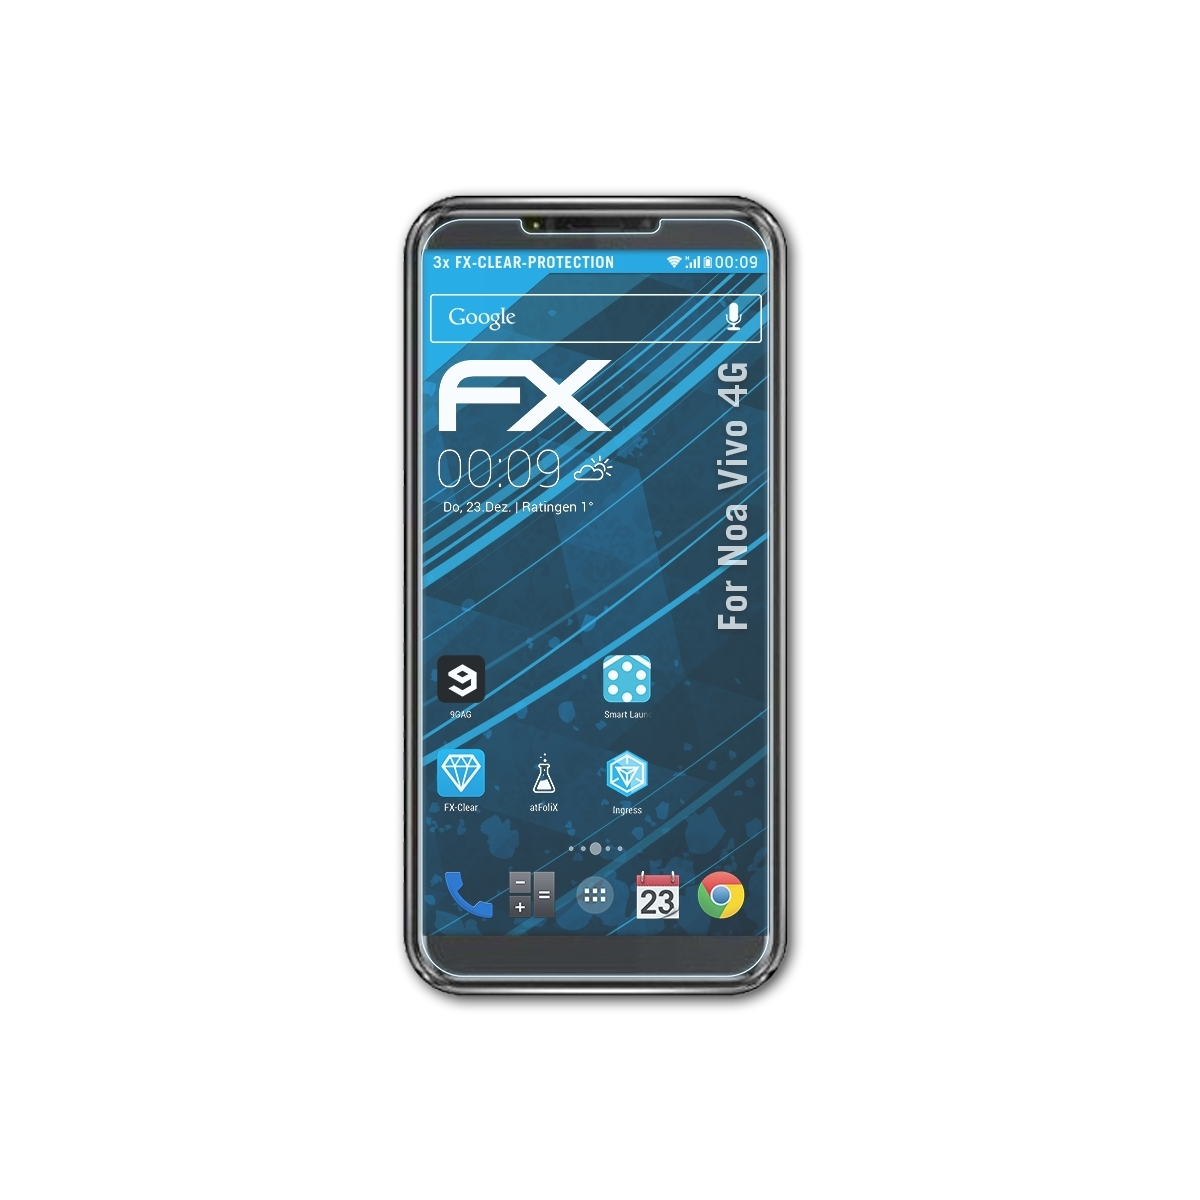 4G) ATFOLIX FX-Clear 3x Vivo Noa Displayschutz(für